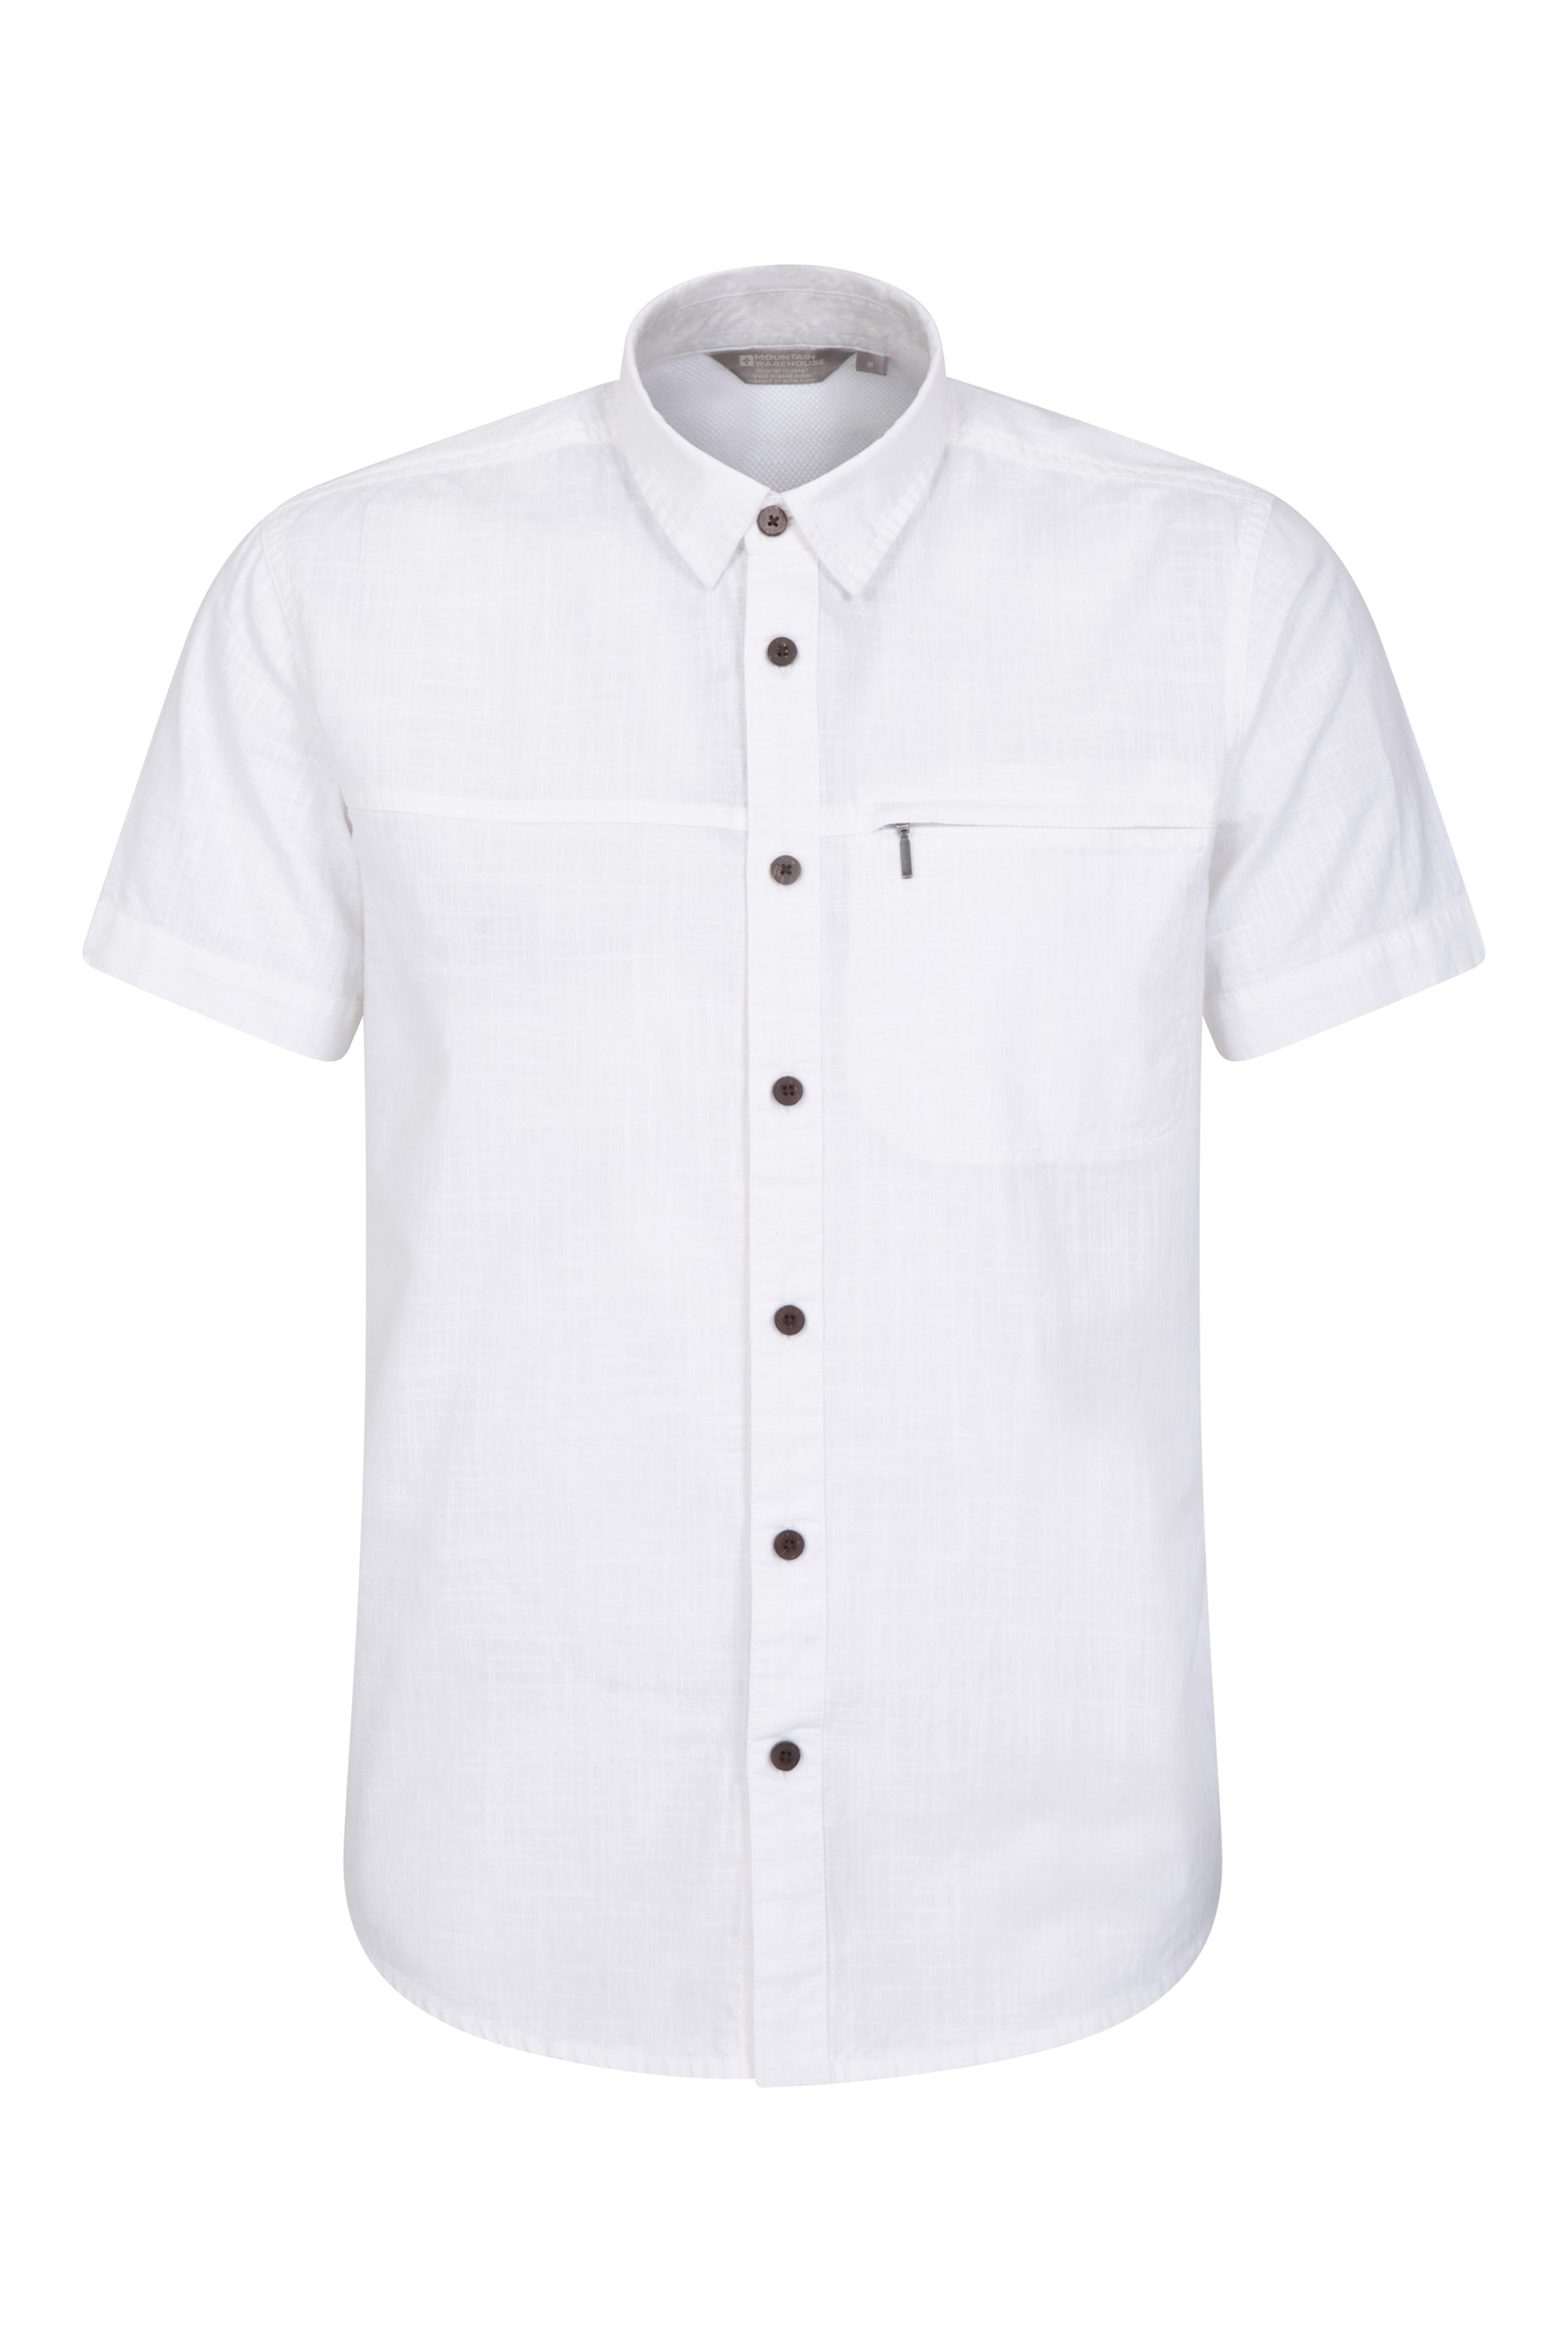 T-shirt à manches courtes Coconut homme - Blanc